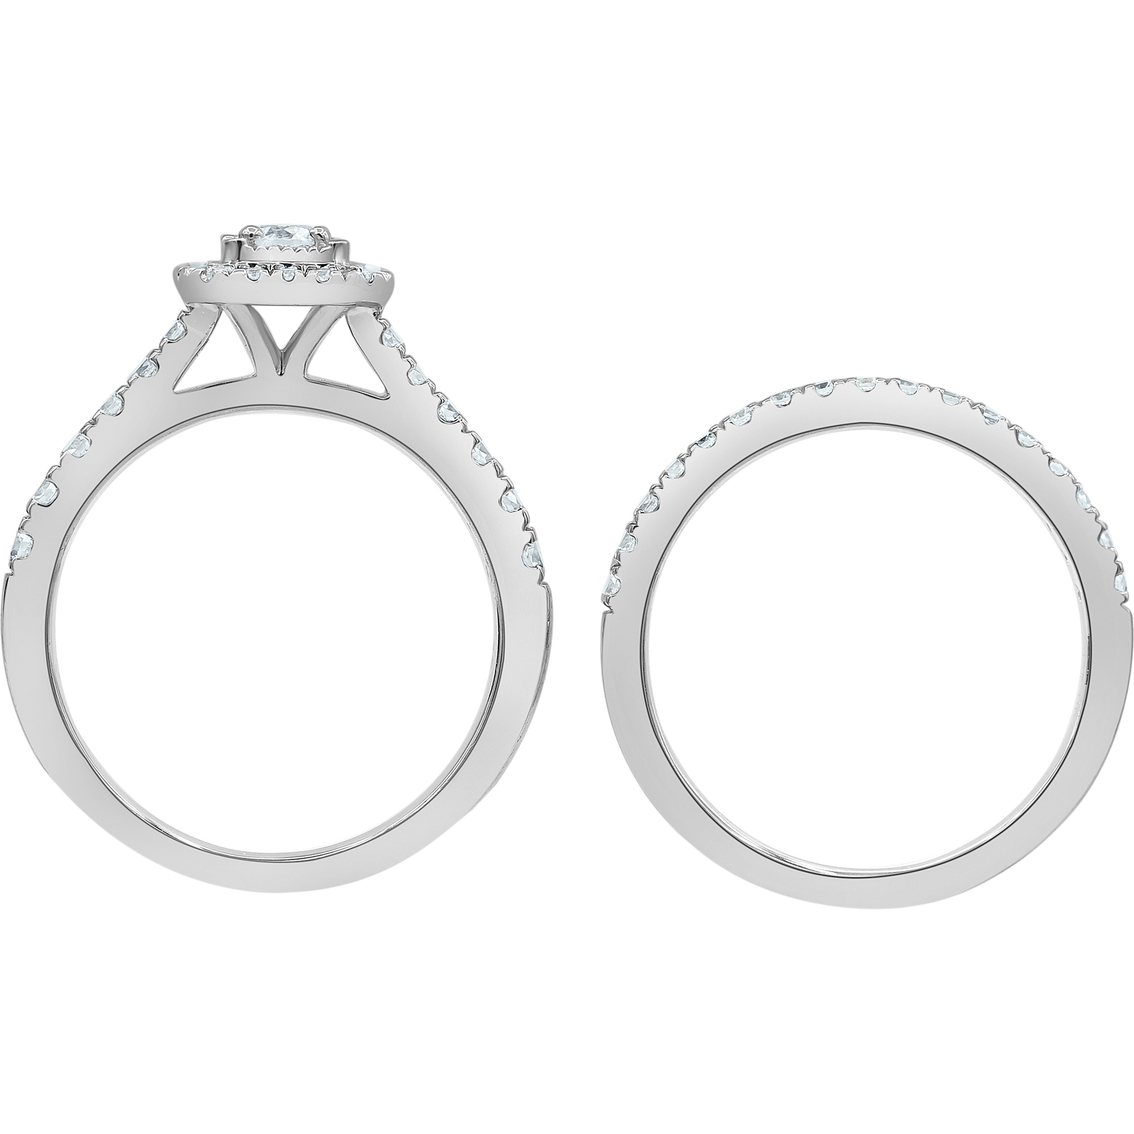 10K White Gold 1 CTW Emerald Shape Diamond Bridal Set - Image 3 of 4